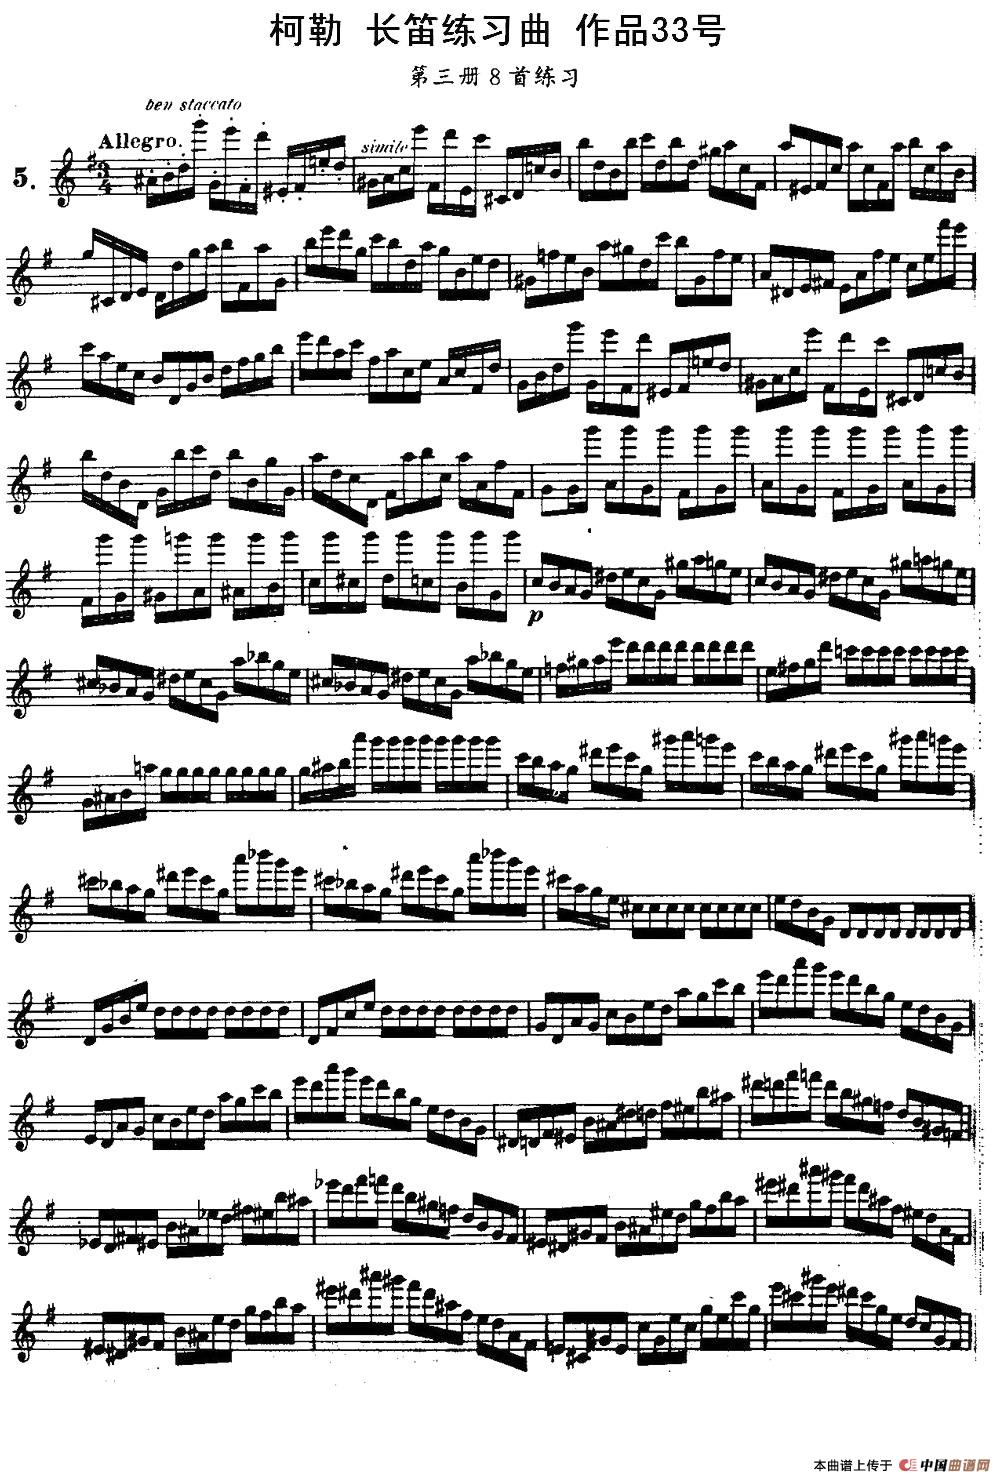 柯勒长笛练习曲作品33号（第三册）（5）长笛谱